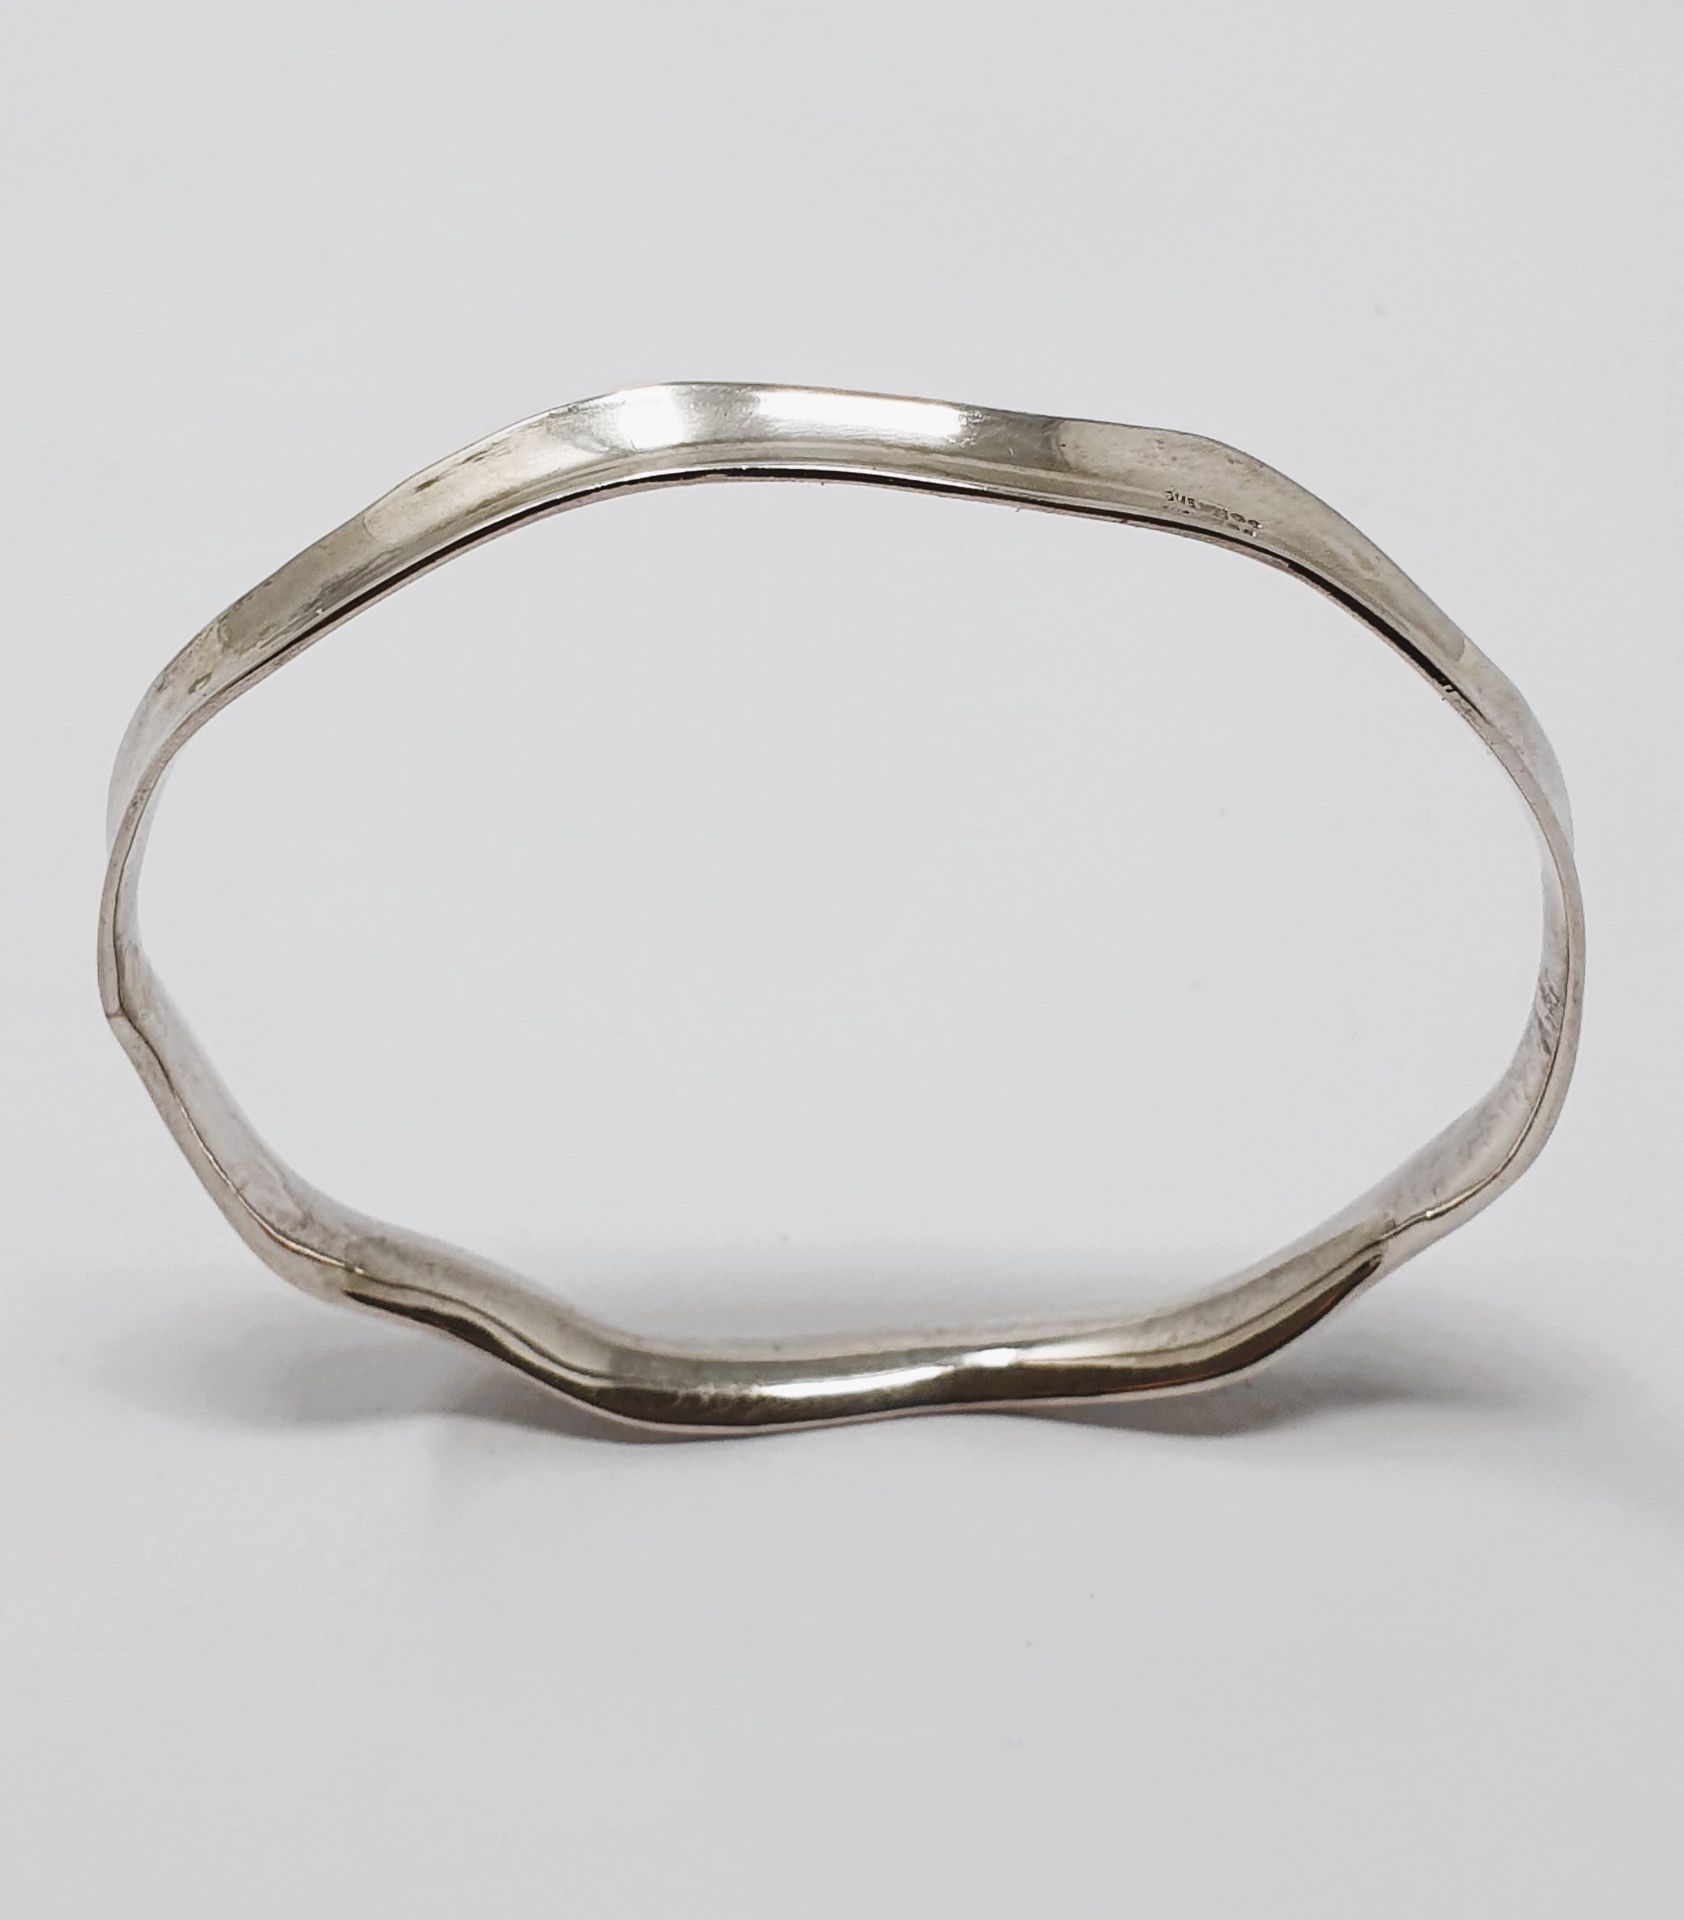 Sterling silver, solid bangle diameter 700mm, filed curb bracelet, stone-set bracelet,